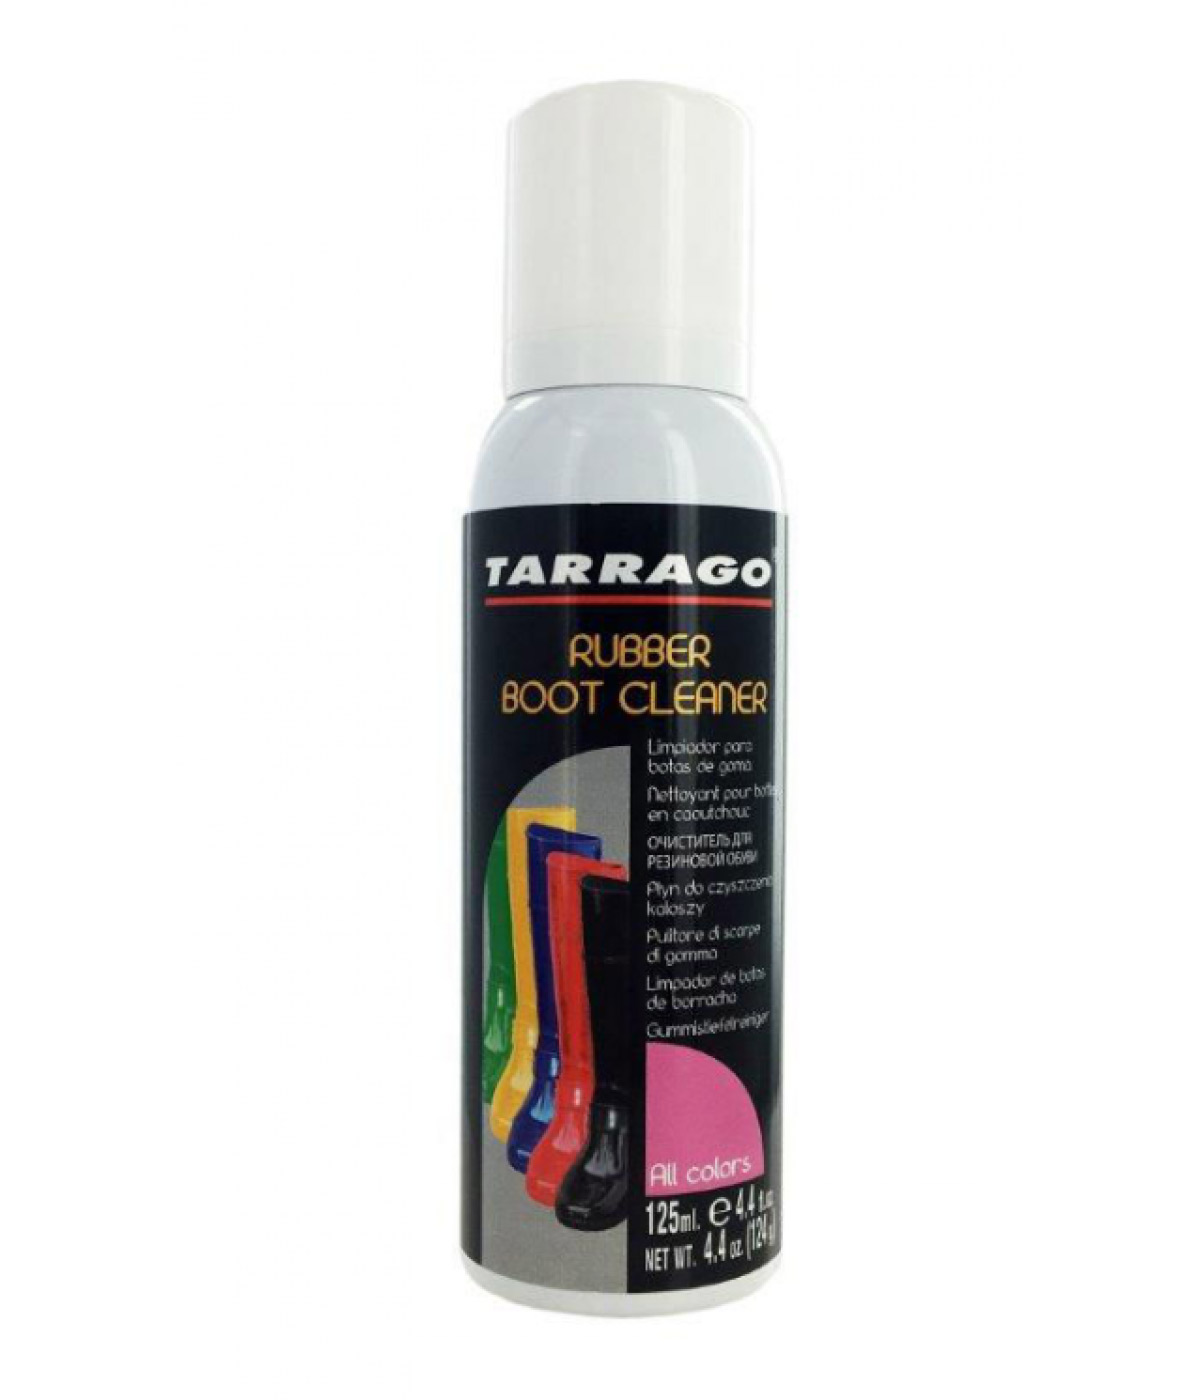 Очиститель для резиновой обуви Tarrago Rubber Boot Cleaner (125 мл)